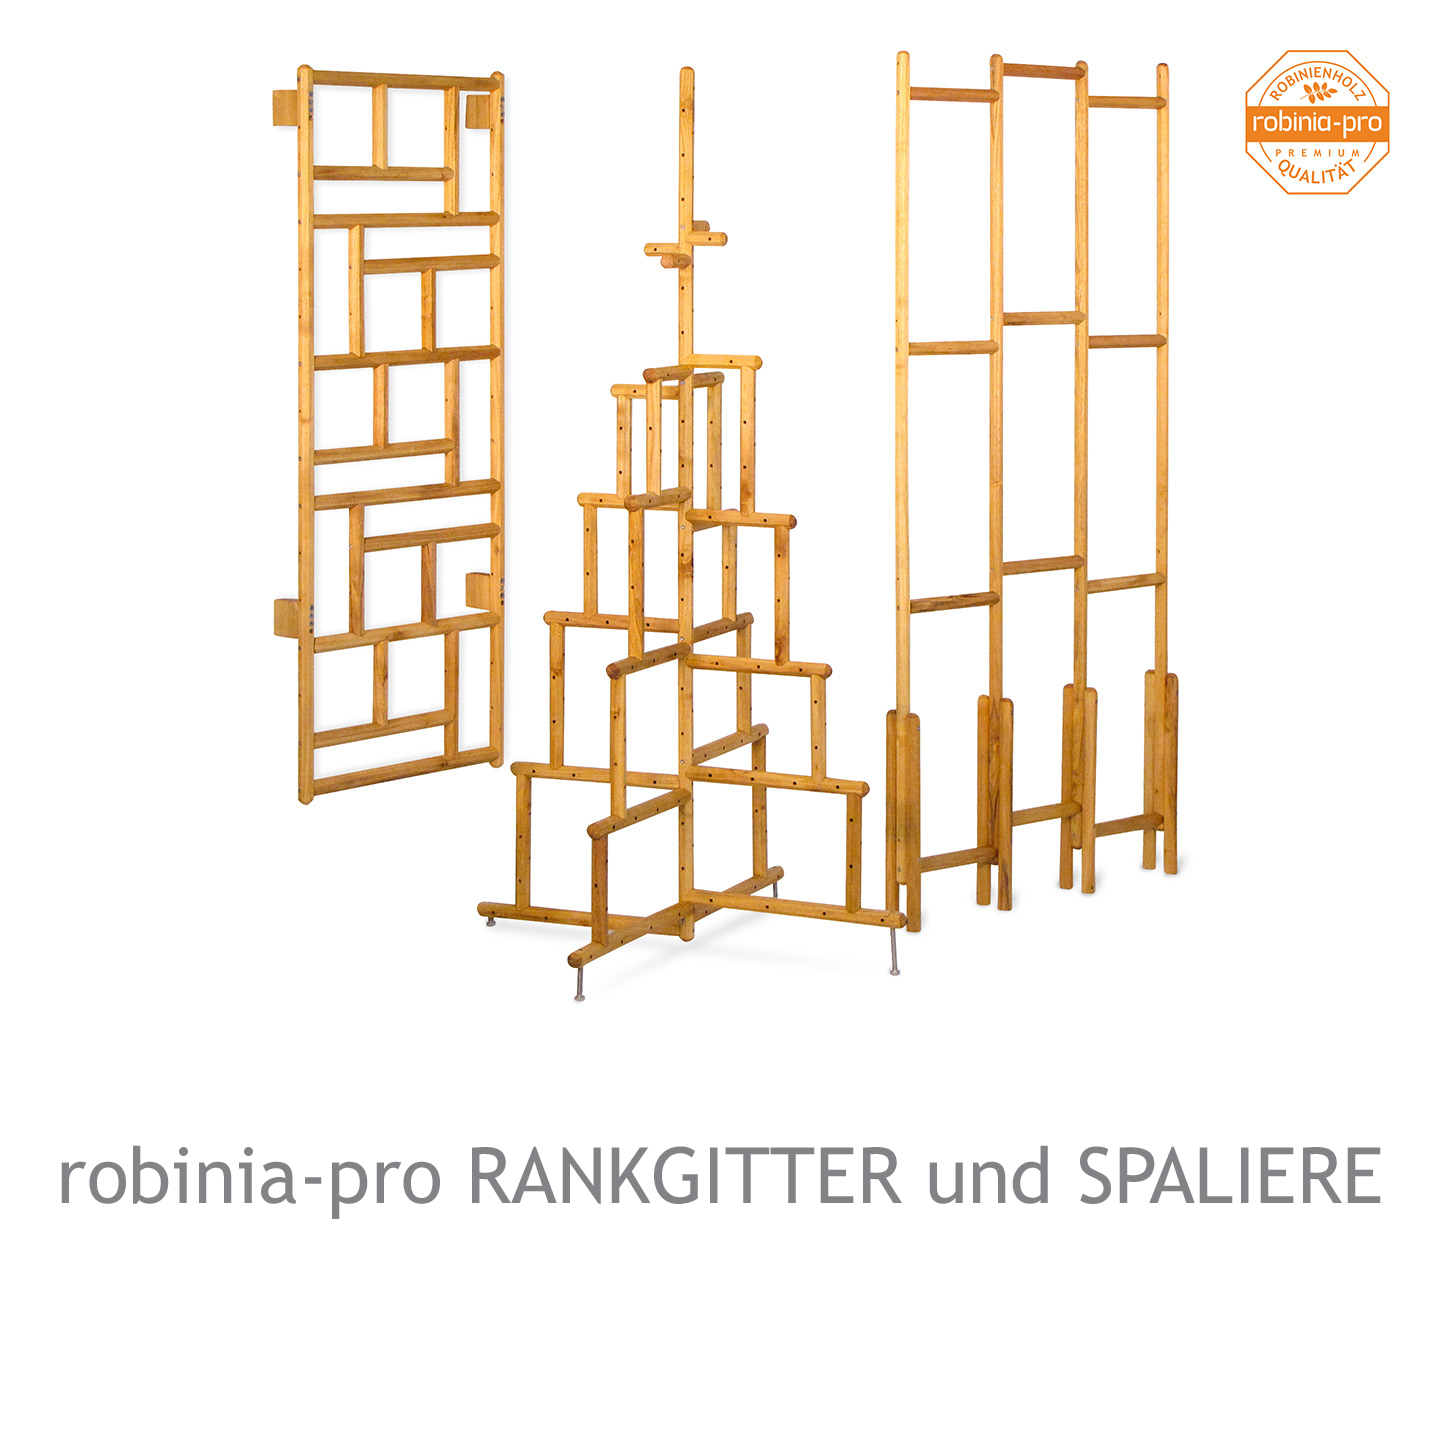 robinia-pro Rankgitter und Spaliere